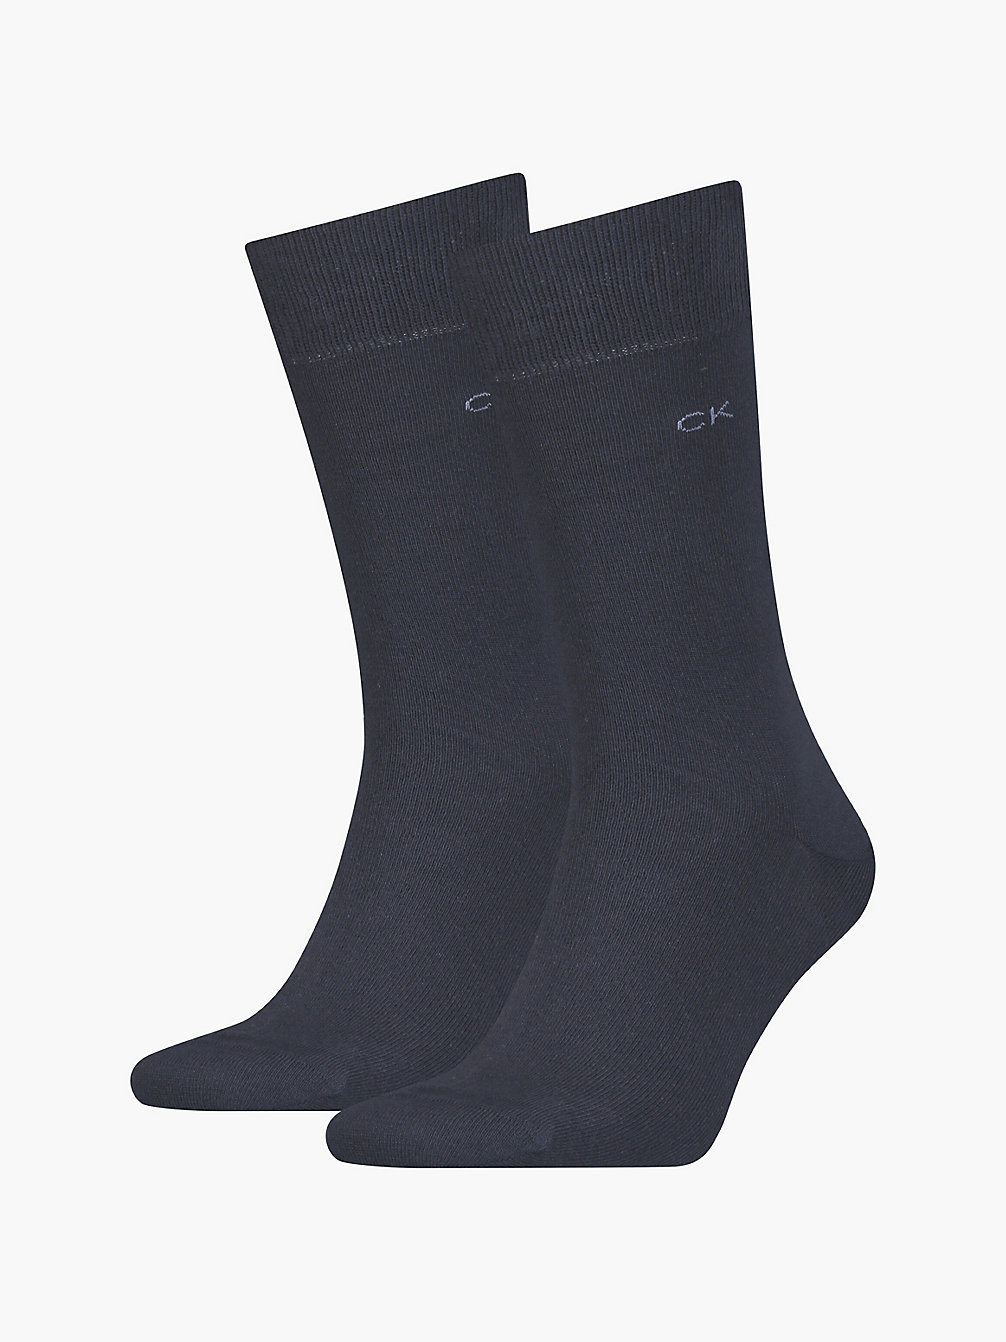 NAVY > Комплект классических высоких носков 2 пары > undefined женщины - Calvin Klein